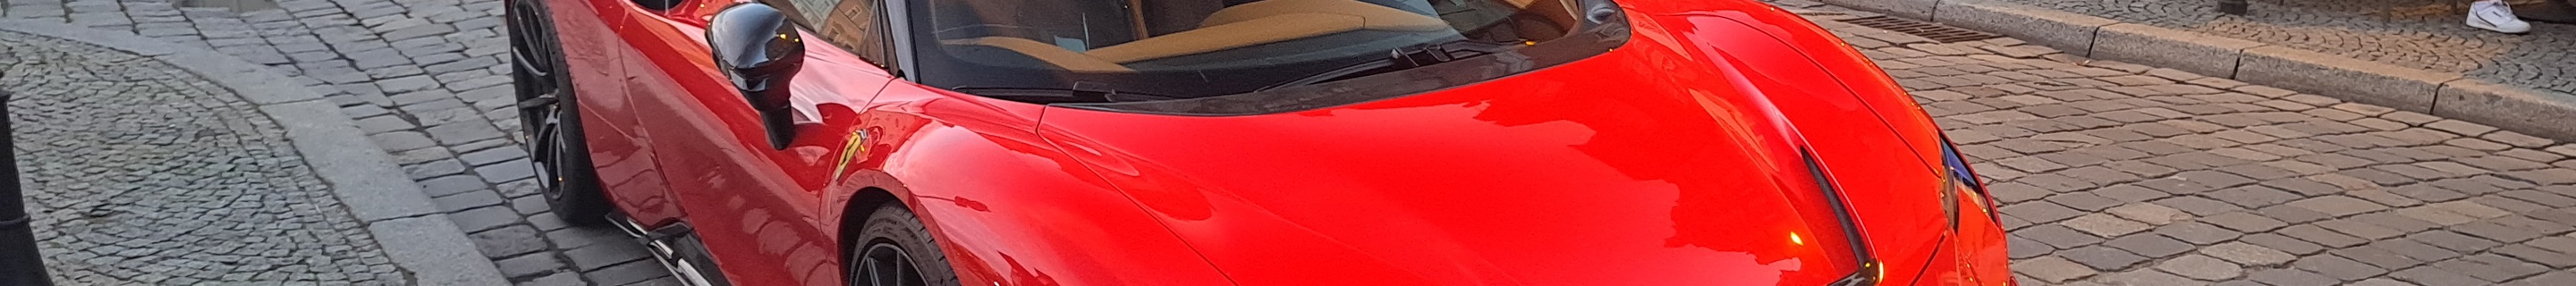 Ferrari SF90 Stradale Assetto Fiorano Novitec Rosso